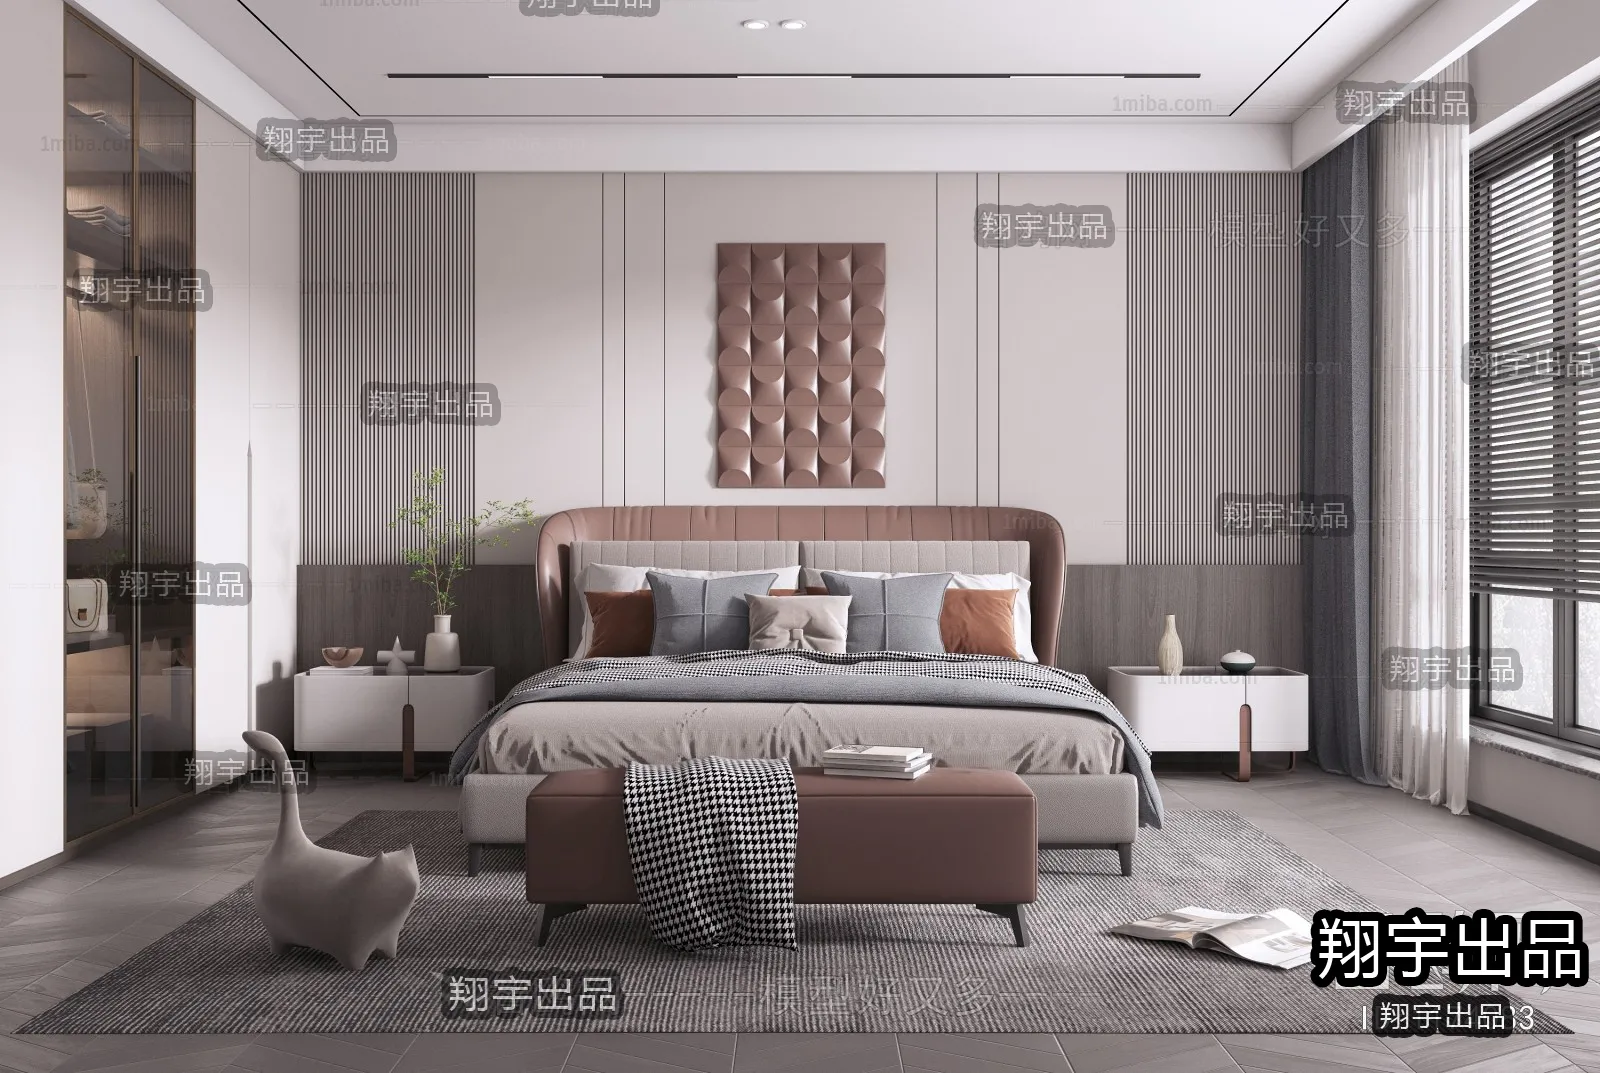 Bedroom – Modern Design – 3D66 – 3D Scenes – 004